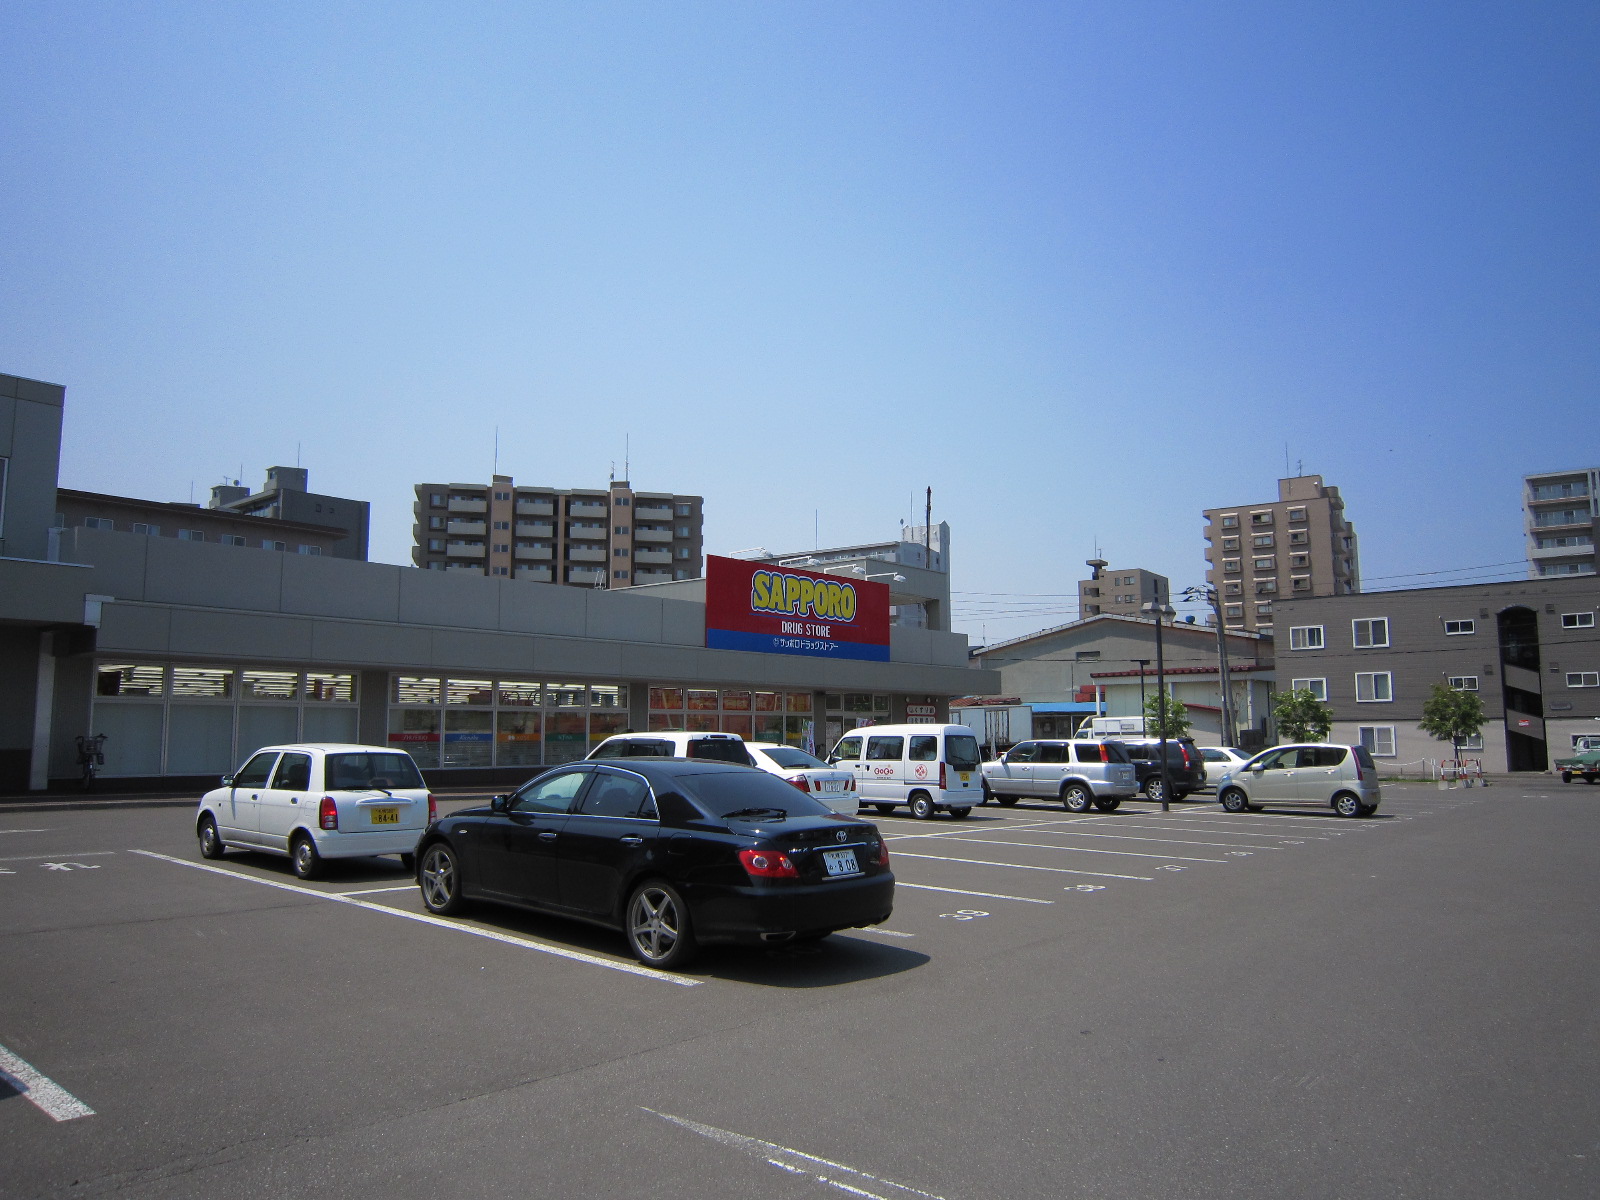 Dorakkusutoa. Sapporo drugstores Higashisapporo shop 472m until (drugstore)